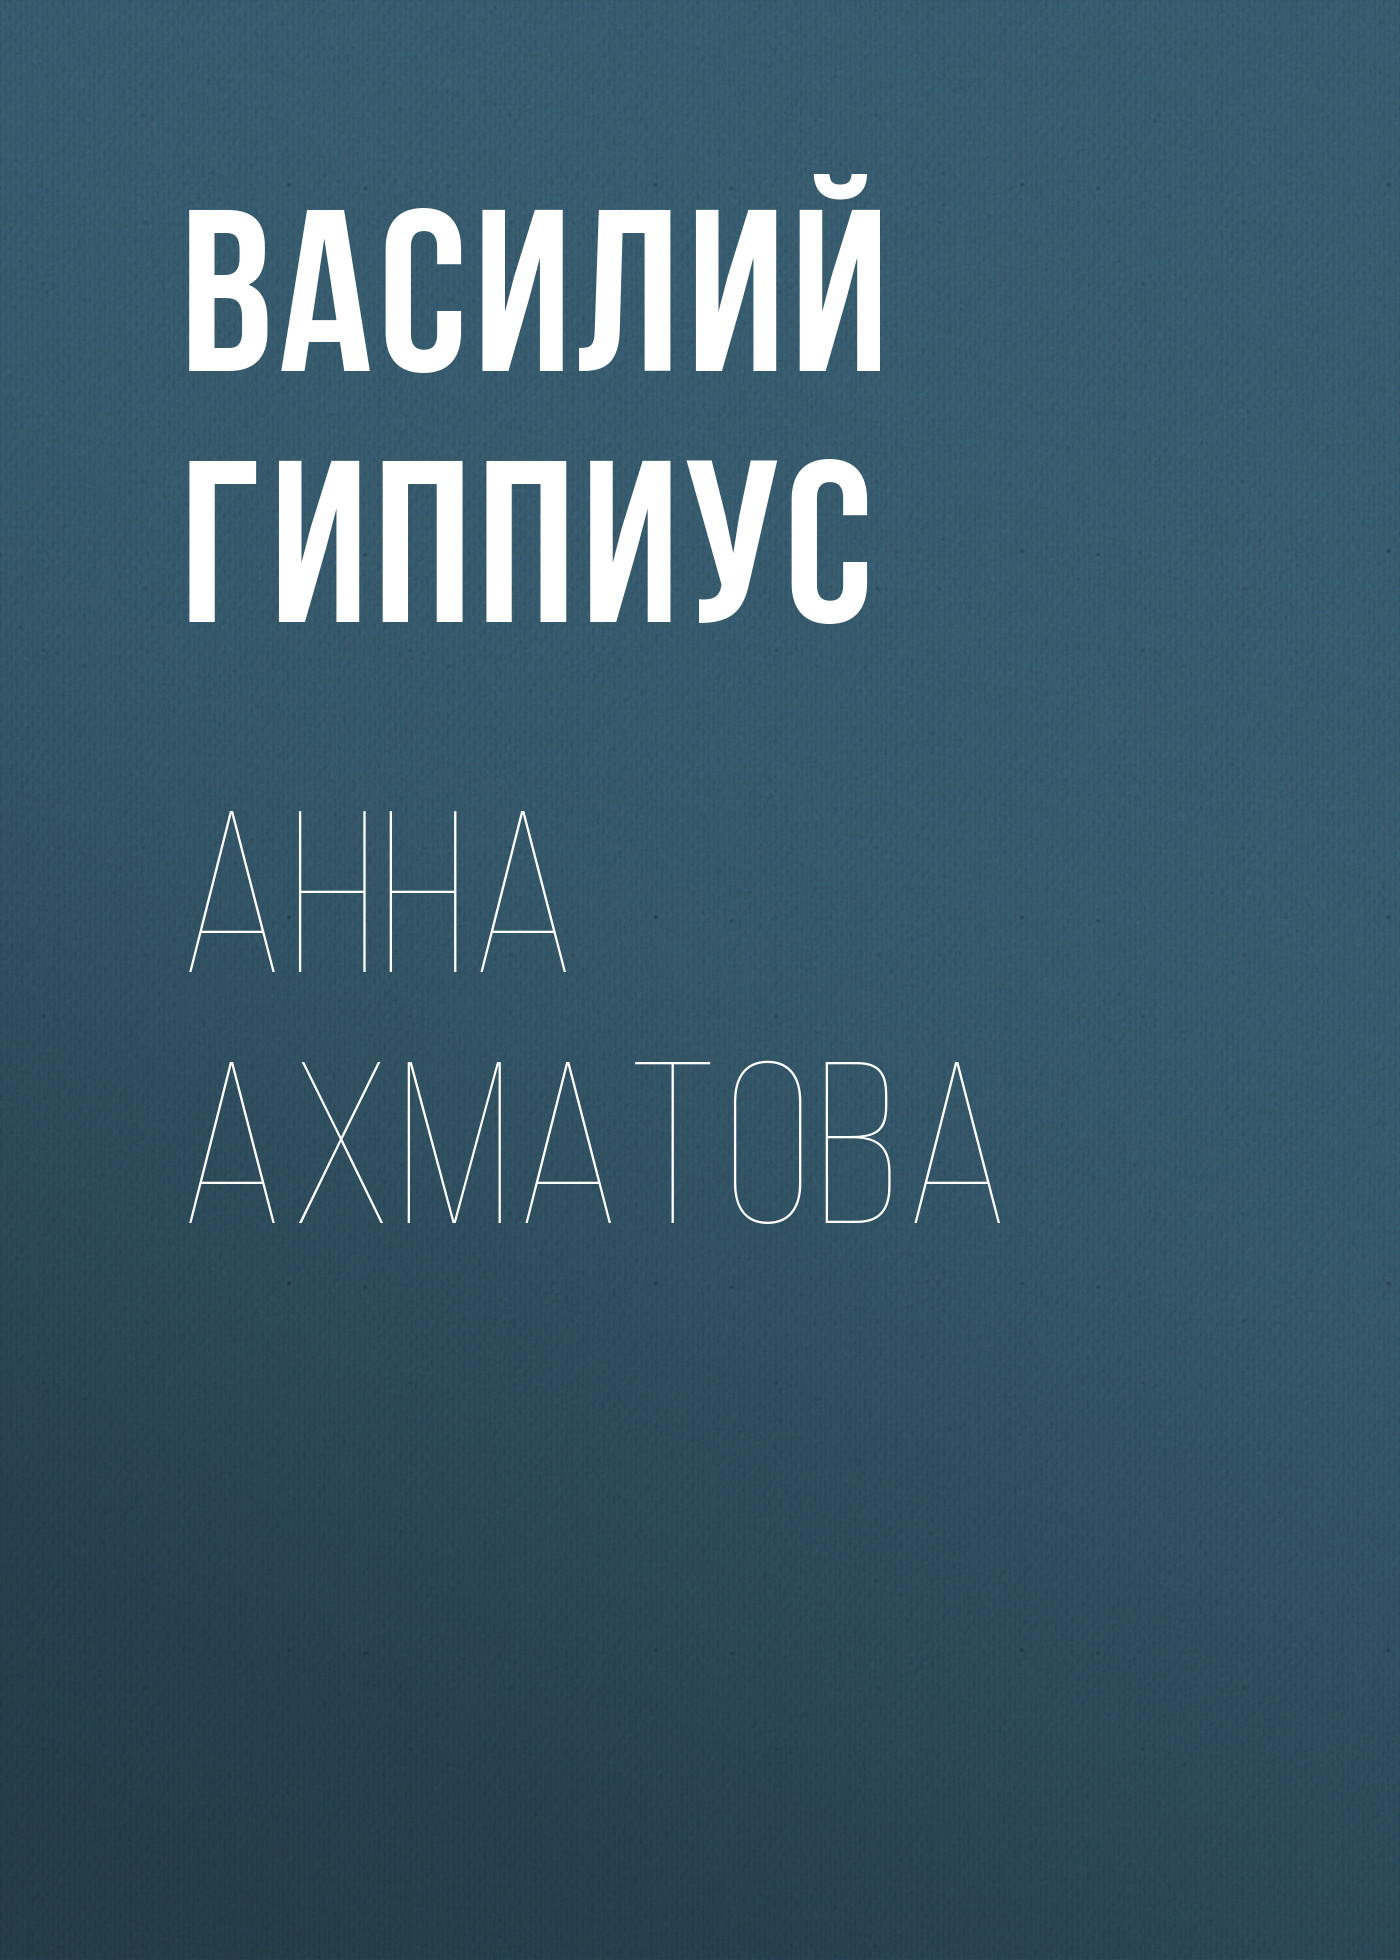 Книга Анна Ахматова из серии , созданная Василий Гиппиус, может относится к жанру Критика. Стоимость электронной книги Анна Ахматова с идентификатором 25726347 составляет 5.99 руб.